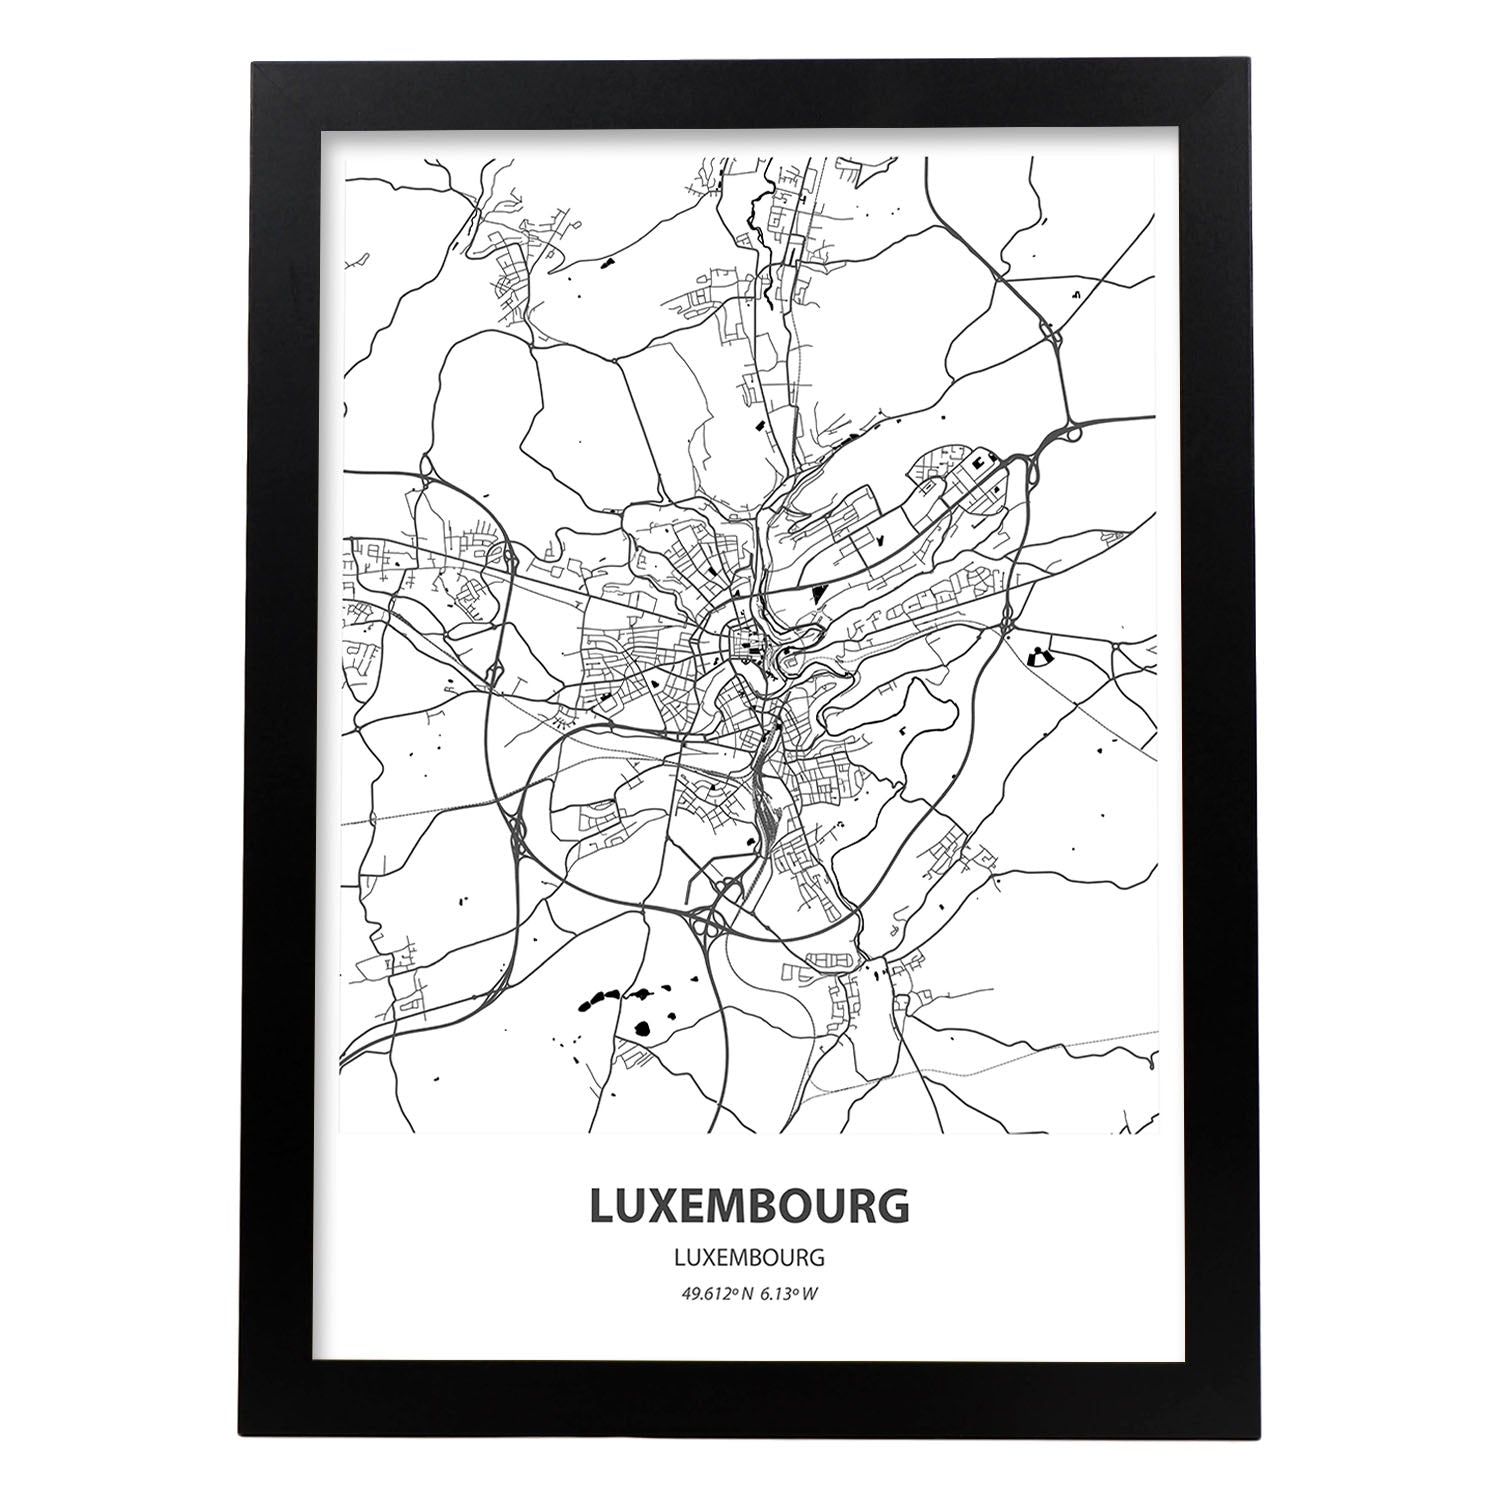 Poster con mapa de Luxemburgo - Luxemburgo. Láminas de ciudades de Europa con mares y ríos en color negro.-Artwork-Nacnic-A3-Marco Negro-Nacnic Estudio SL